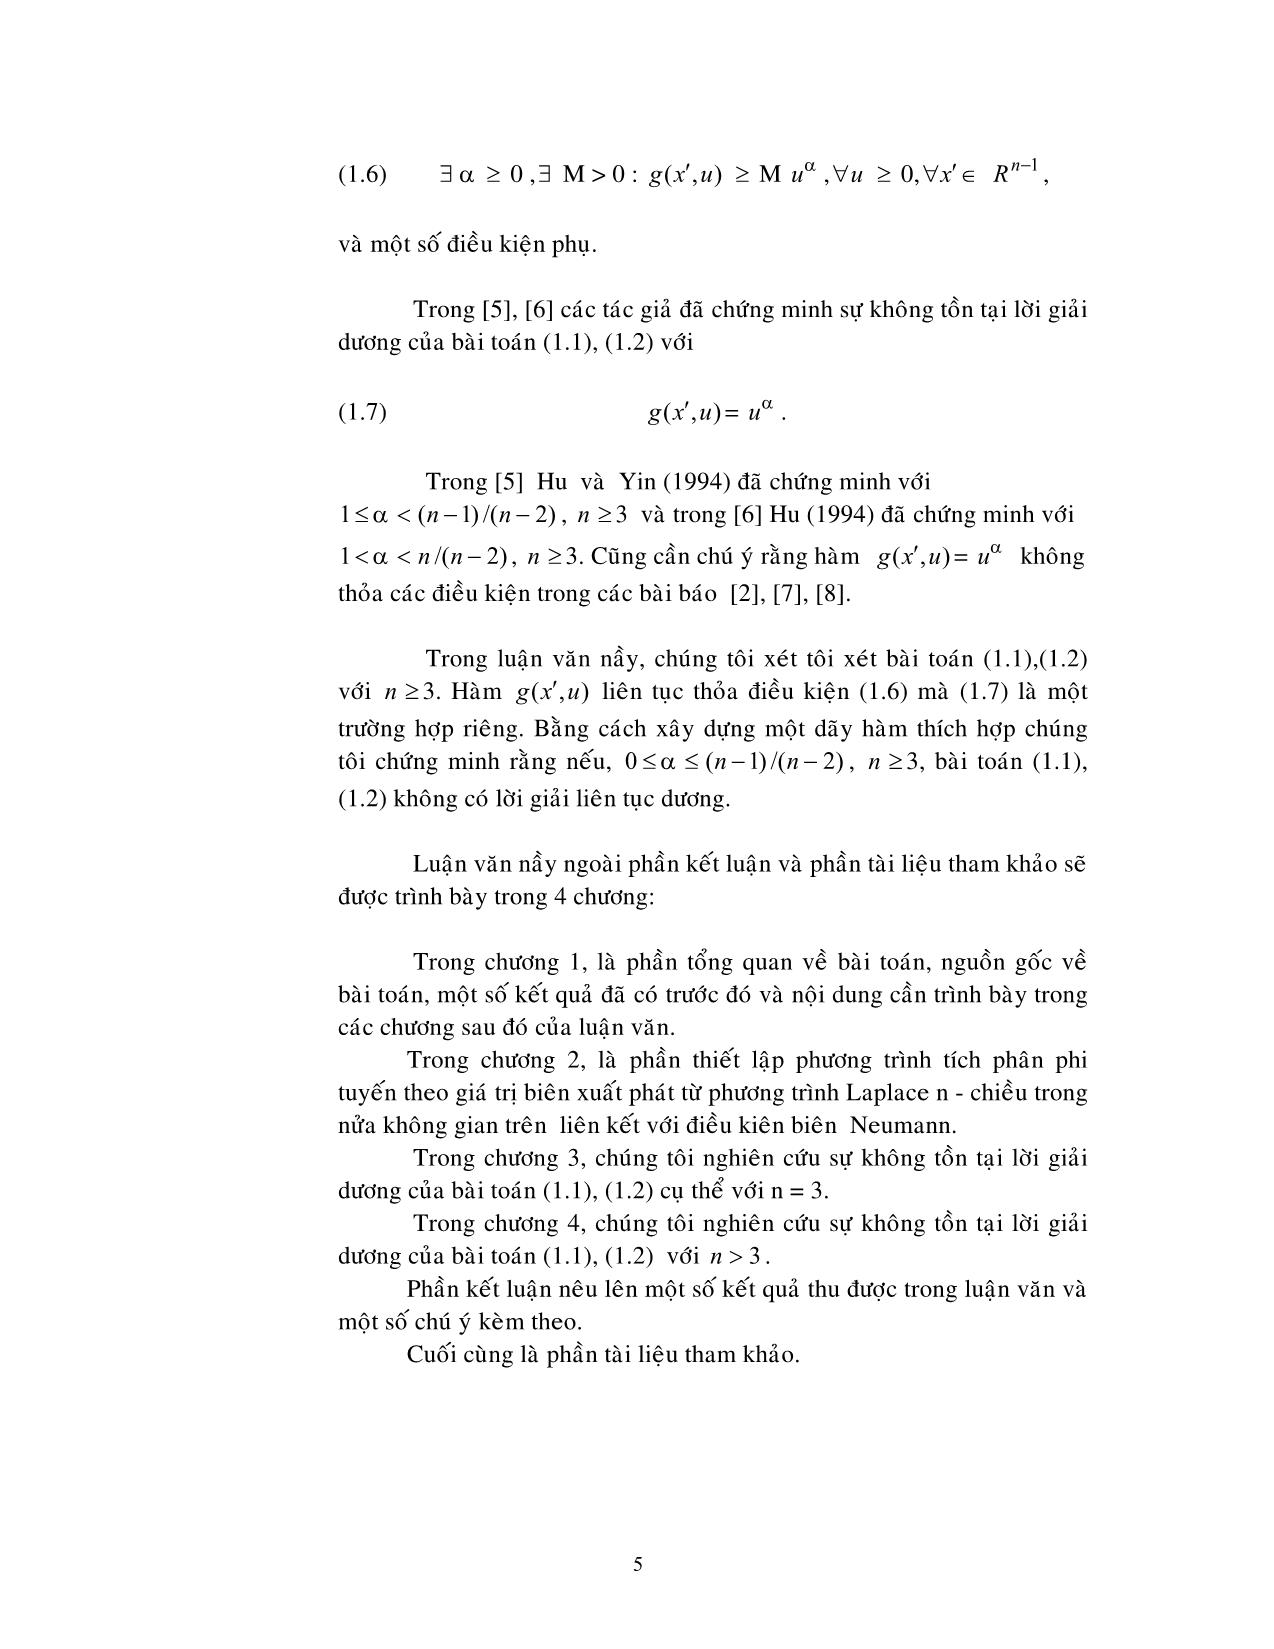 Luận văn Sự không tồn tại lời giải dương của một số bài toán Neumann phi tuyến trong nửa không gian trên trang 5